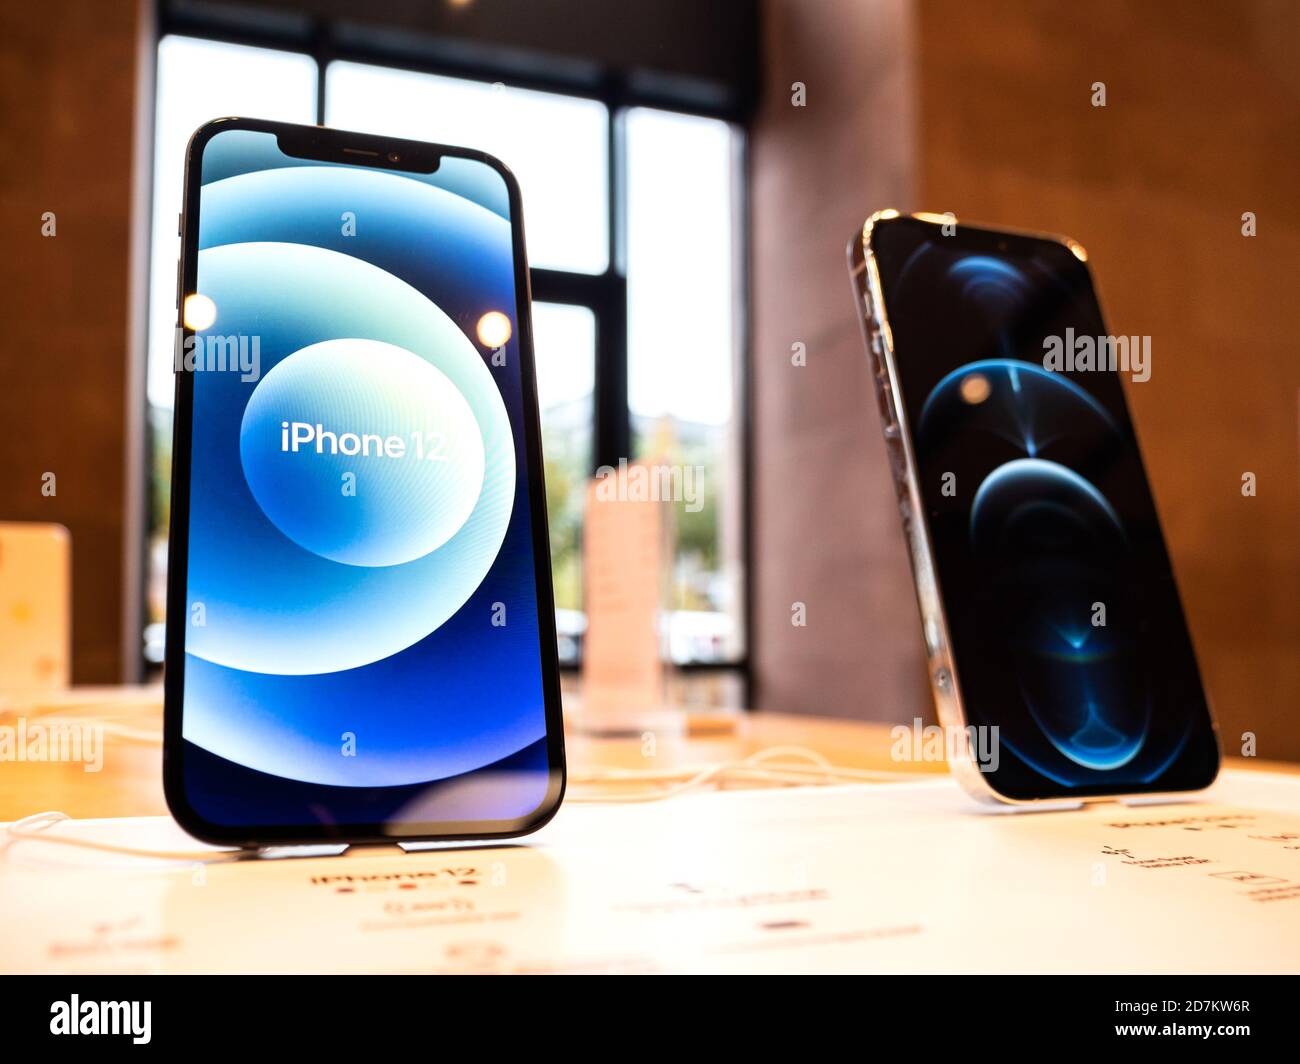 Paris, Frankreich - 23. Oktober 2020: Hero-Objekt des neuen iPhone 12 und iPhone 12 Pro auf dem Display während des Launch-Day im Apple Store. Die neuesten 5G-Smartphones sind weltweit erhältlich. Stockfoto